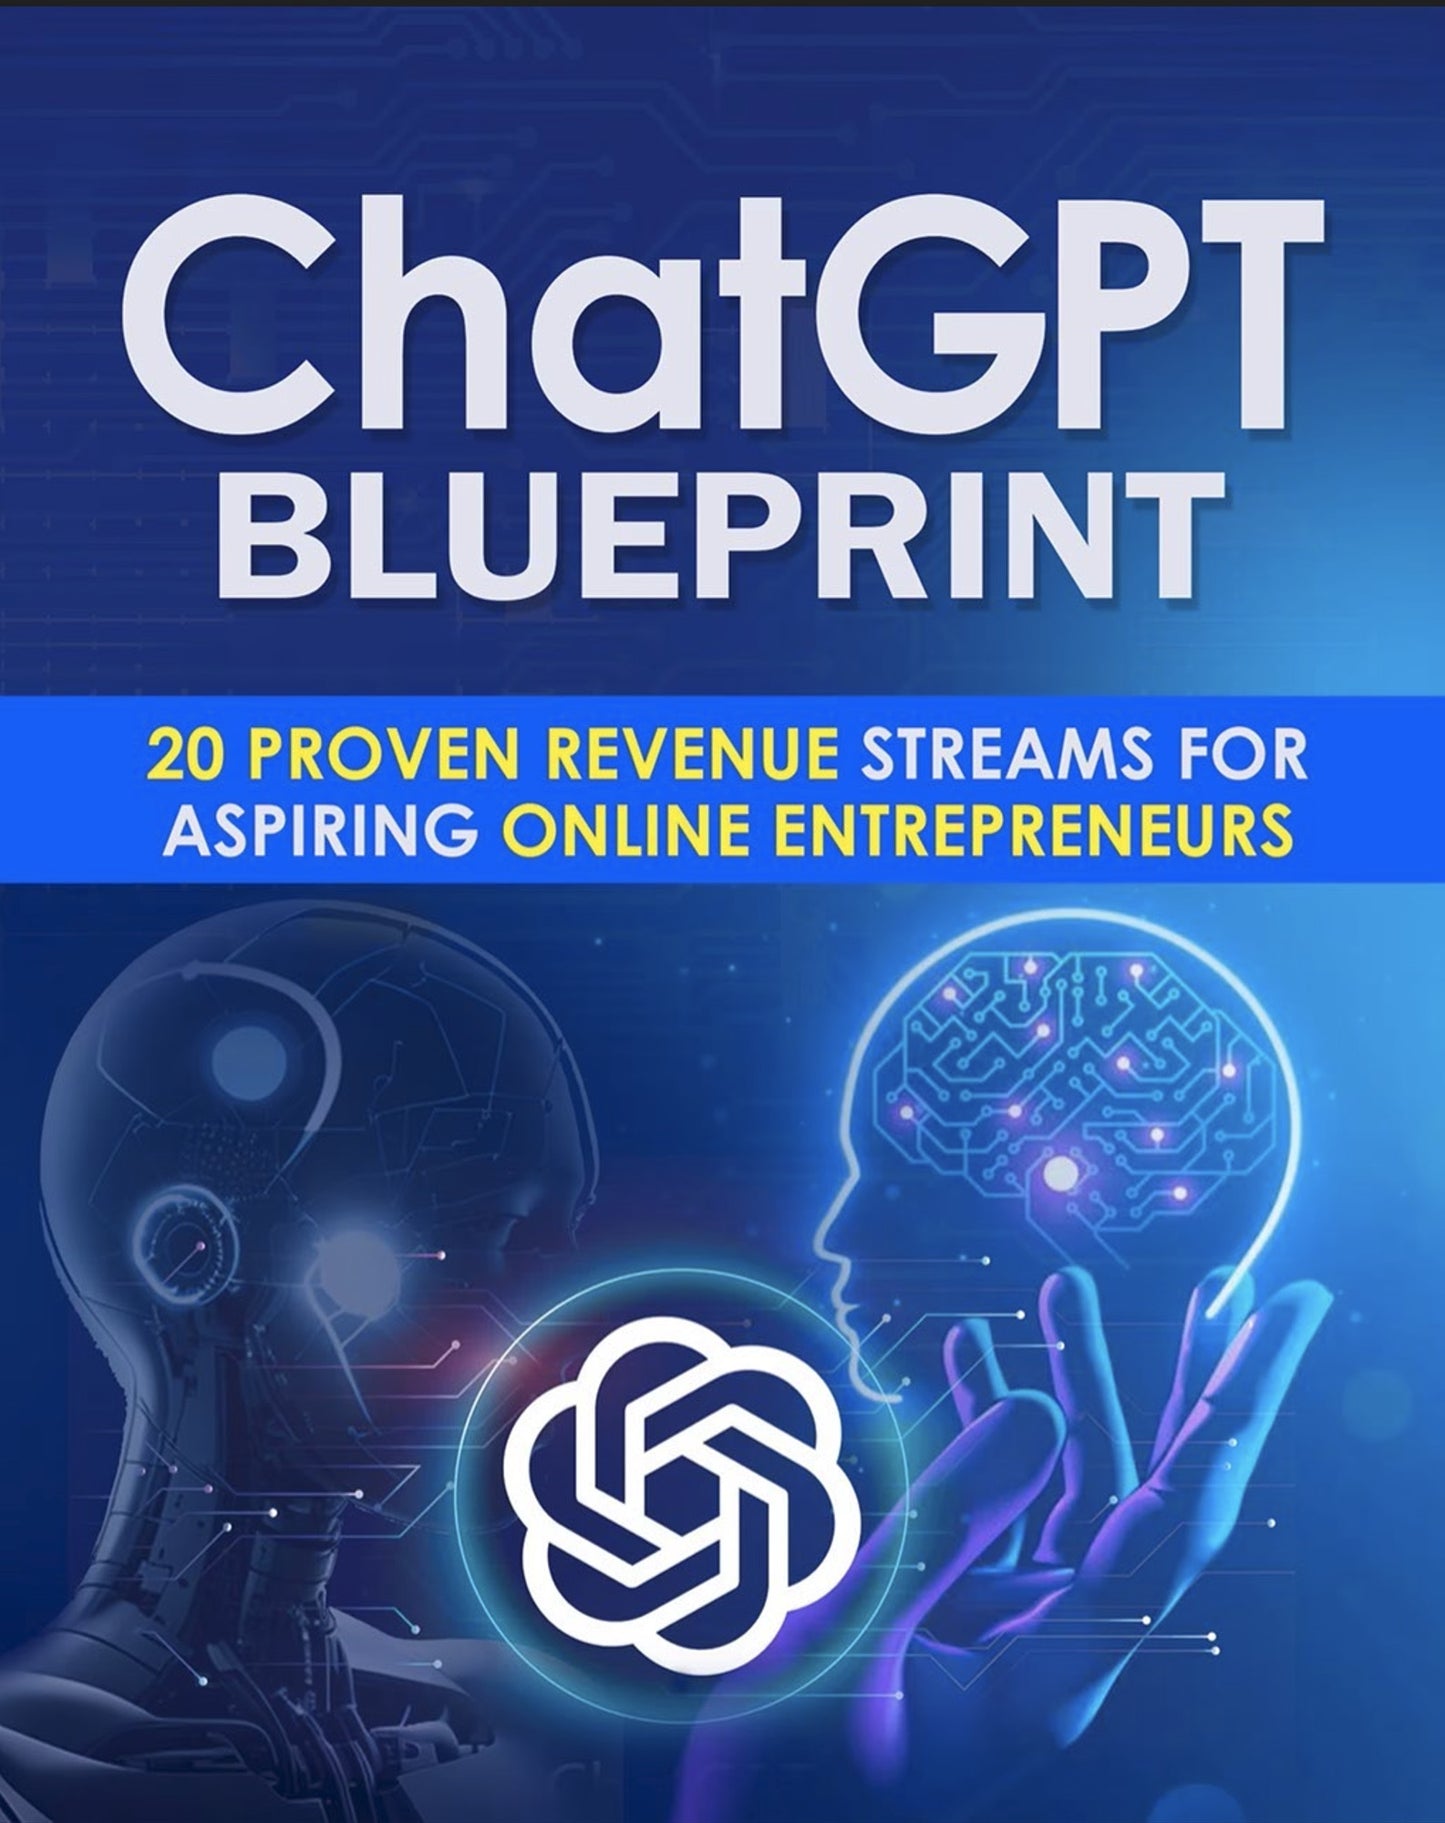 Chat GPT Blueprint